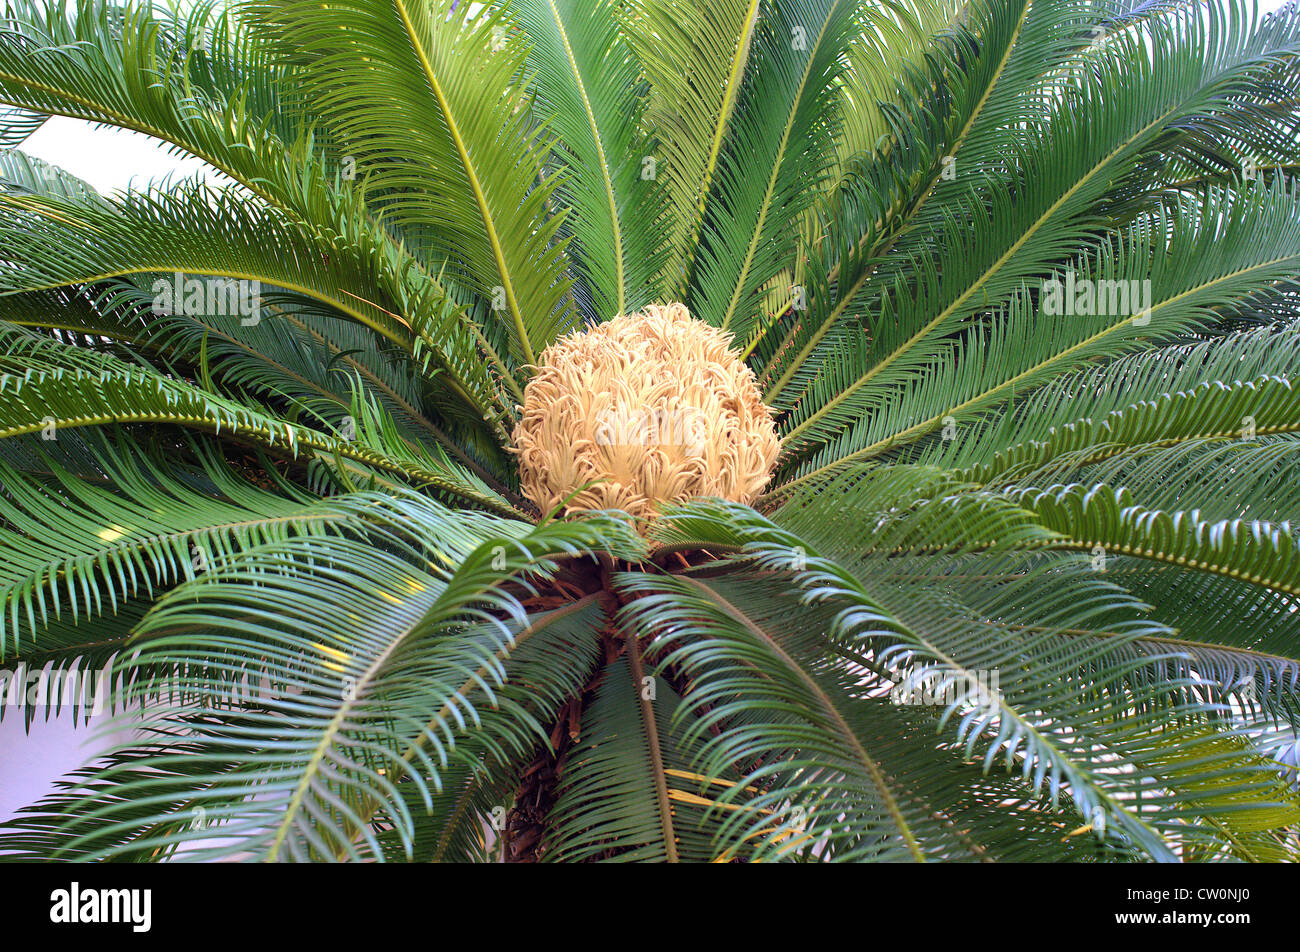 Sago Palm with blossom Cycas revoluta Stock Photo